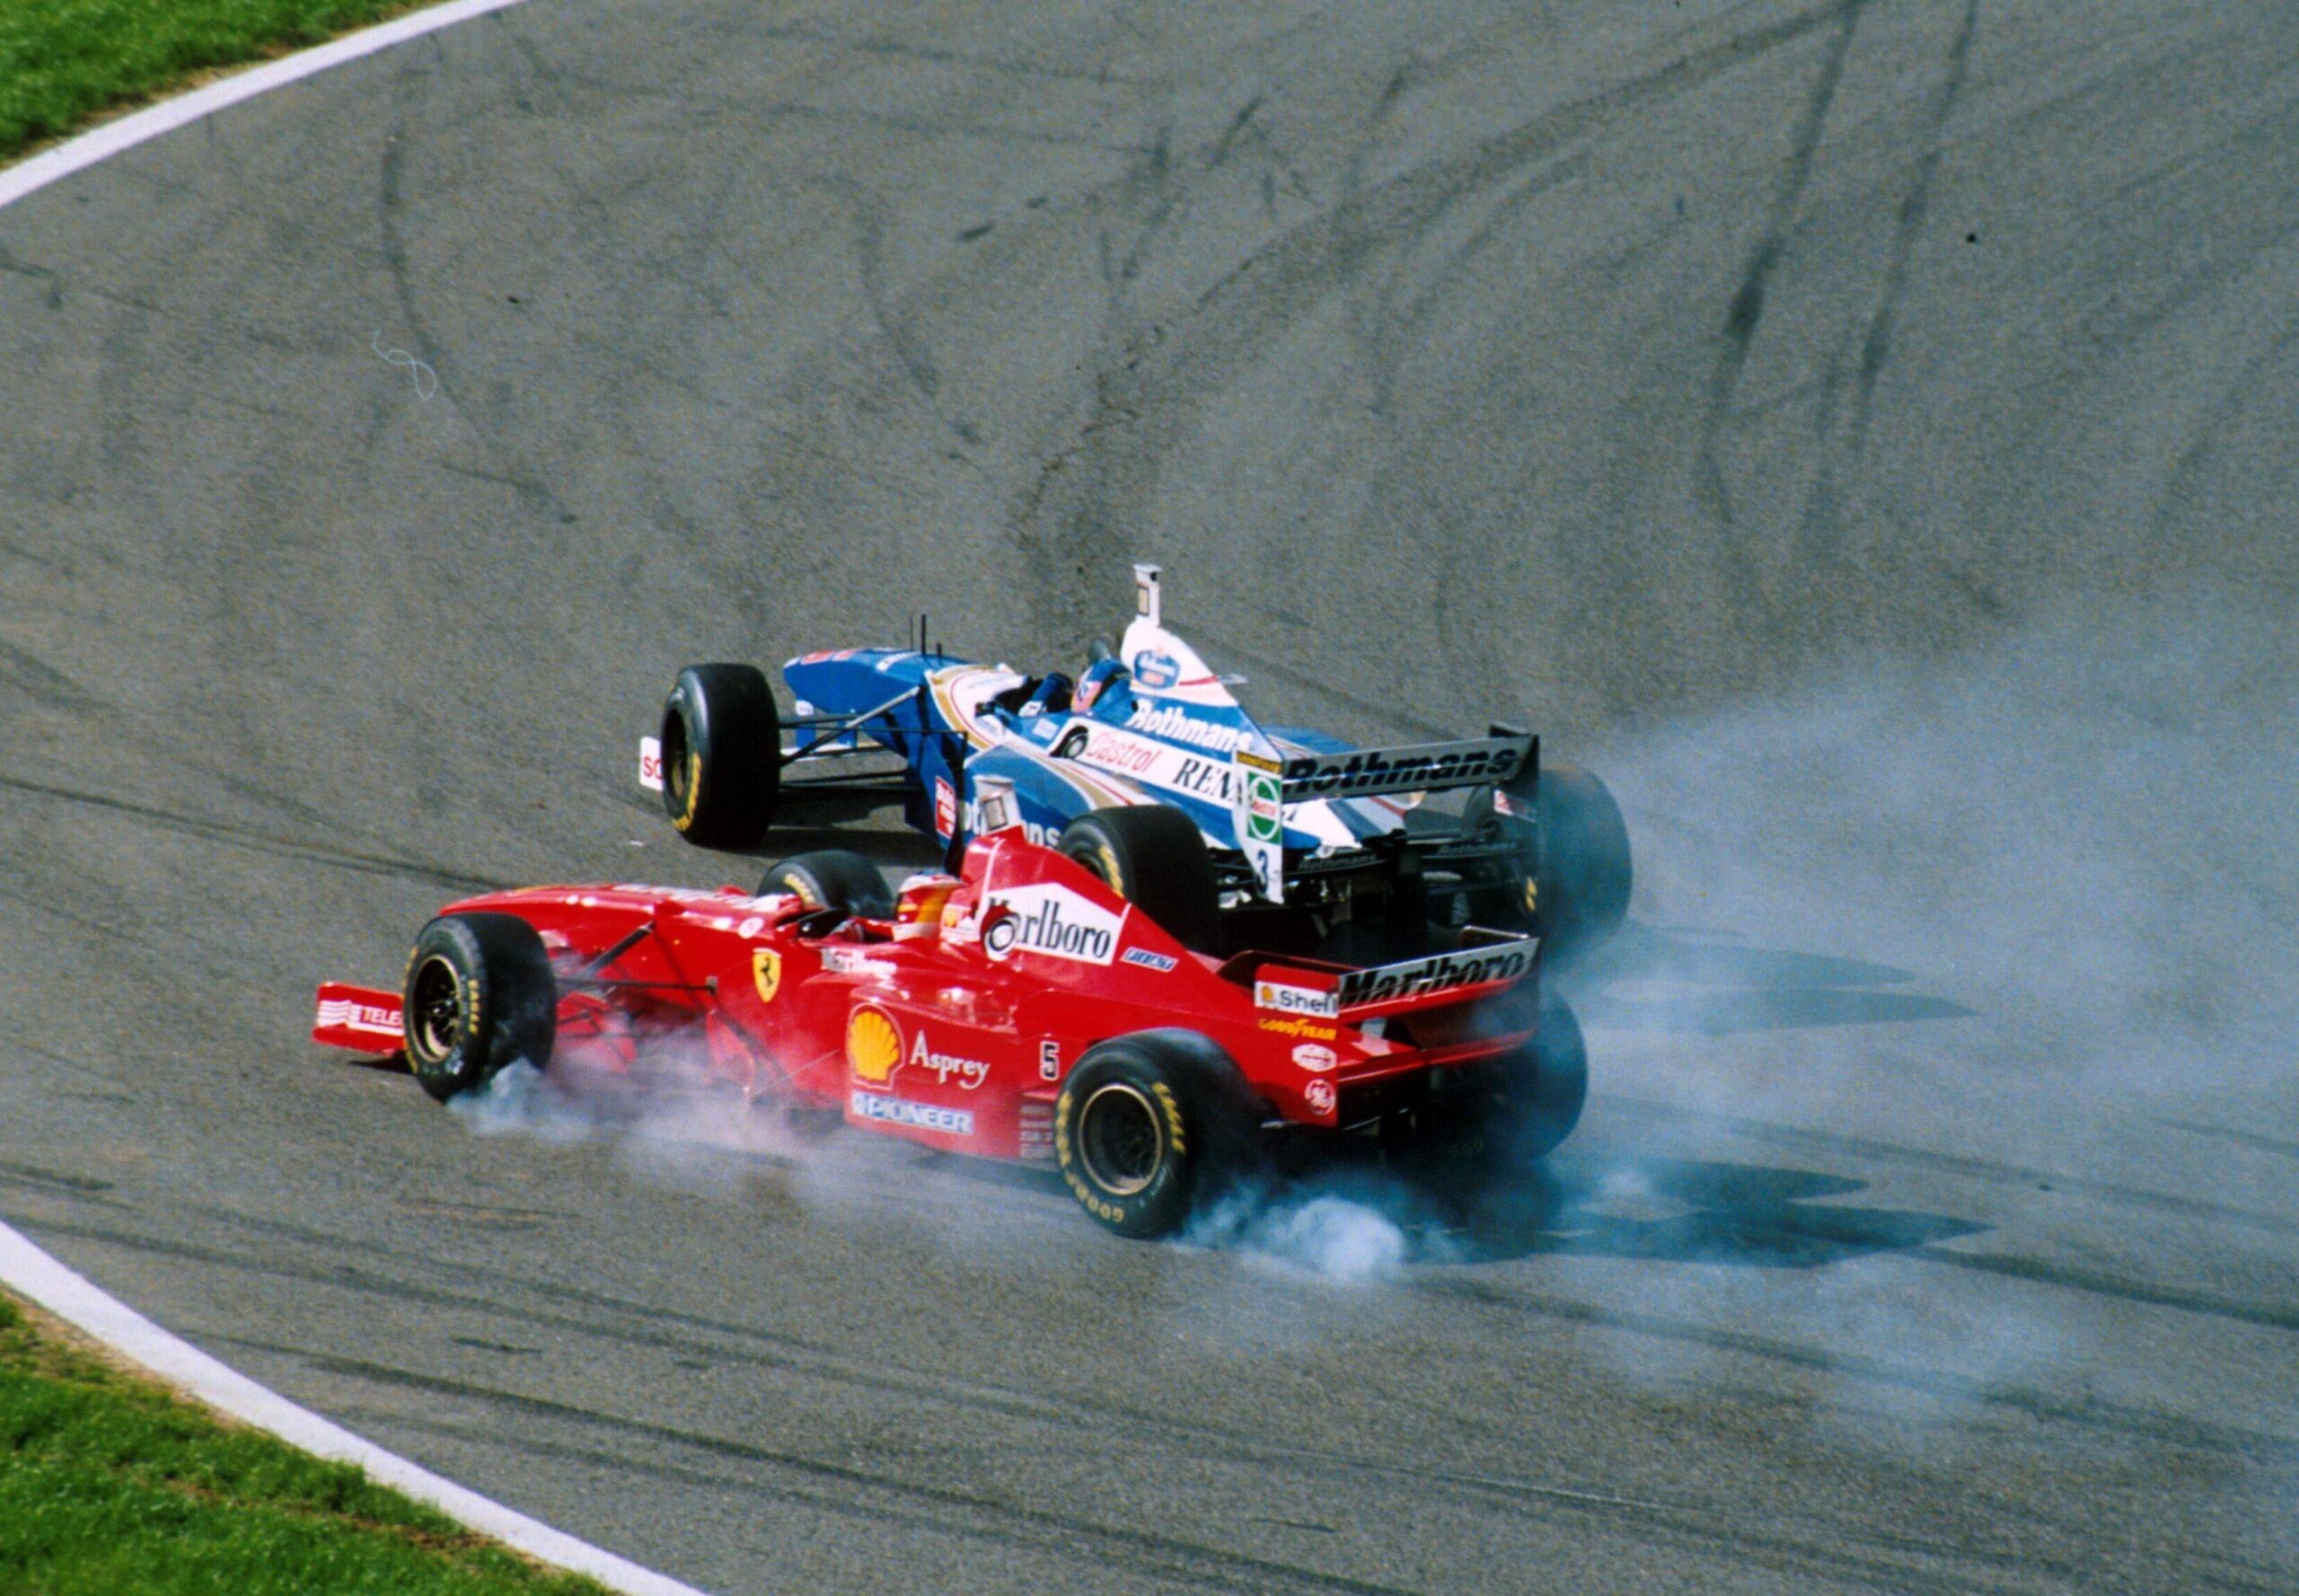 Během posledního závodu v Jerezu roku 1997 zajeli tři piloti F1 stejný kvalifikační čas